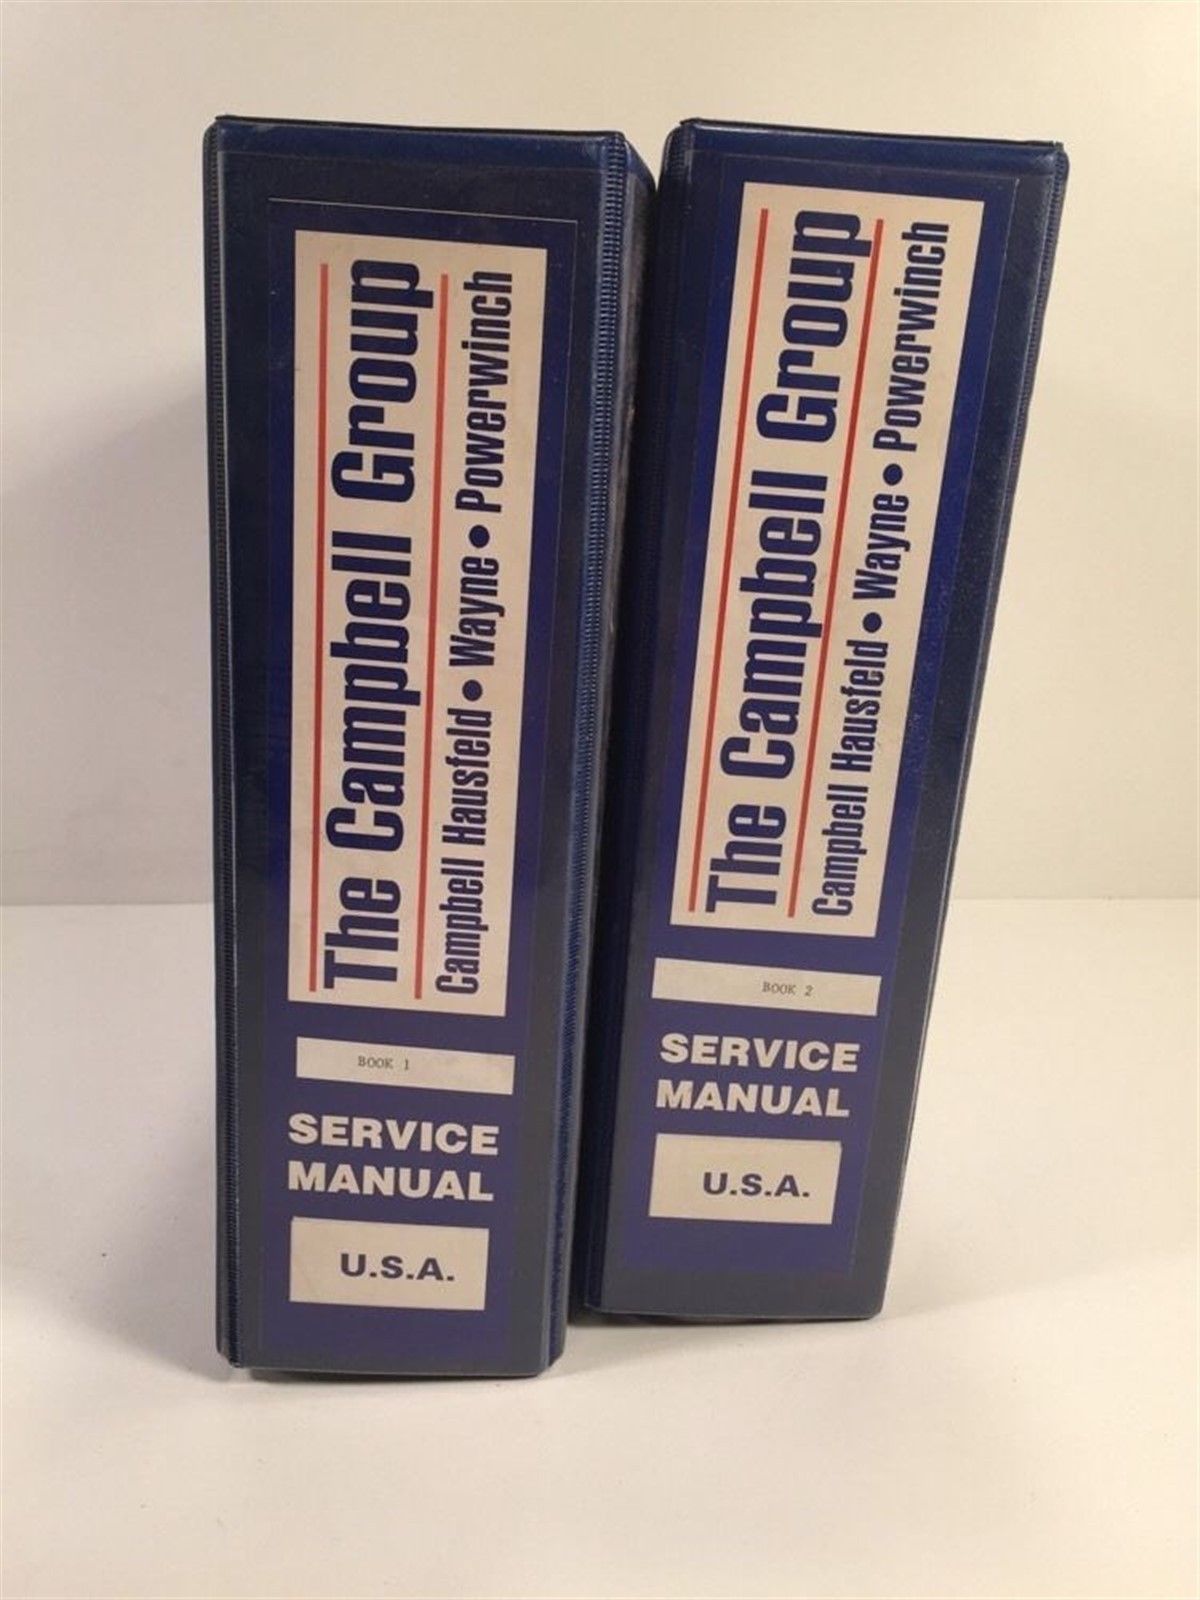 Campbell Hausfeld Dealer Service Manuals - Air Compressors & More - 2 Volumes - $79.99